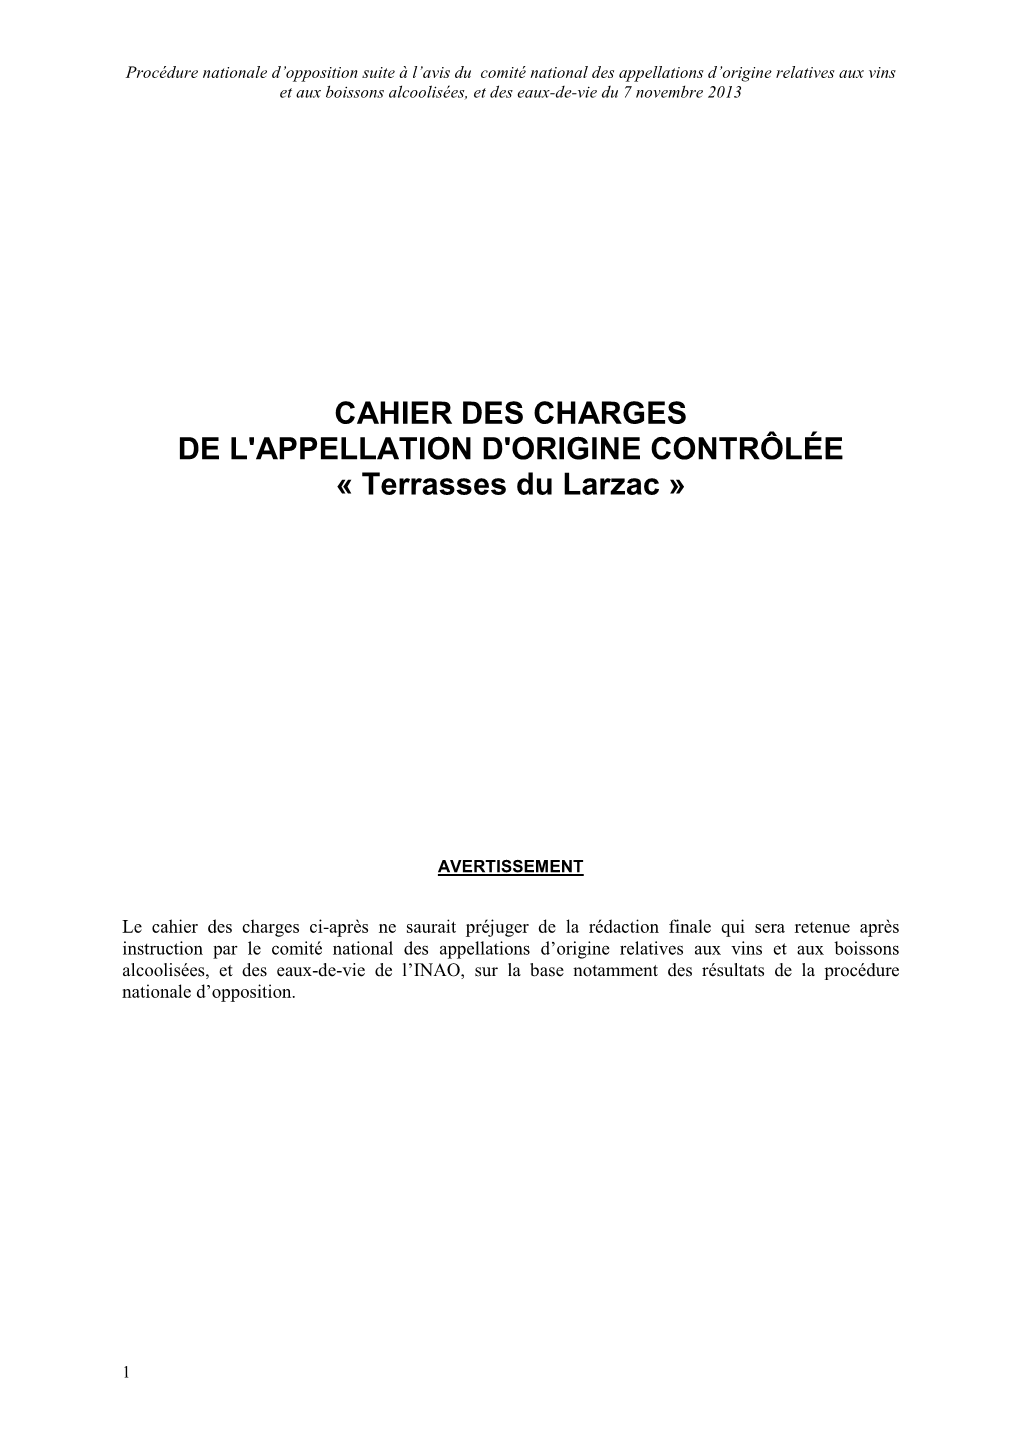 CAHIER DES CHARGES DE L'appellation D'origine CONTRÔLÉE « Terrasses Du Larzac »